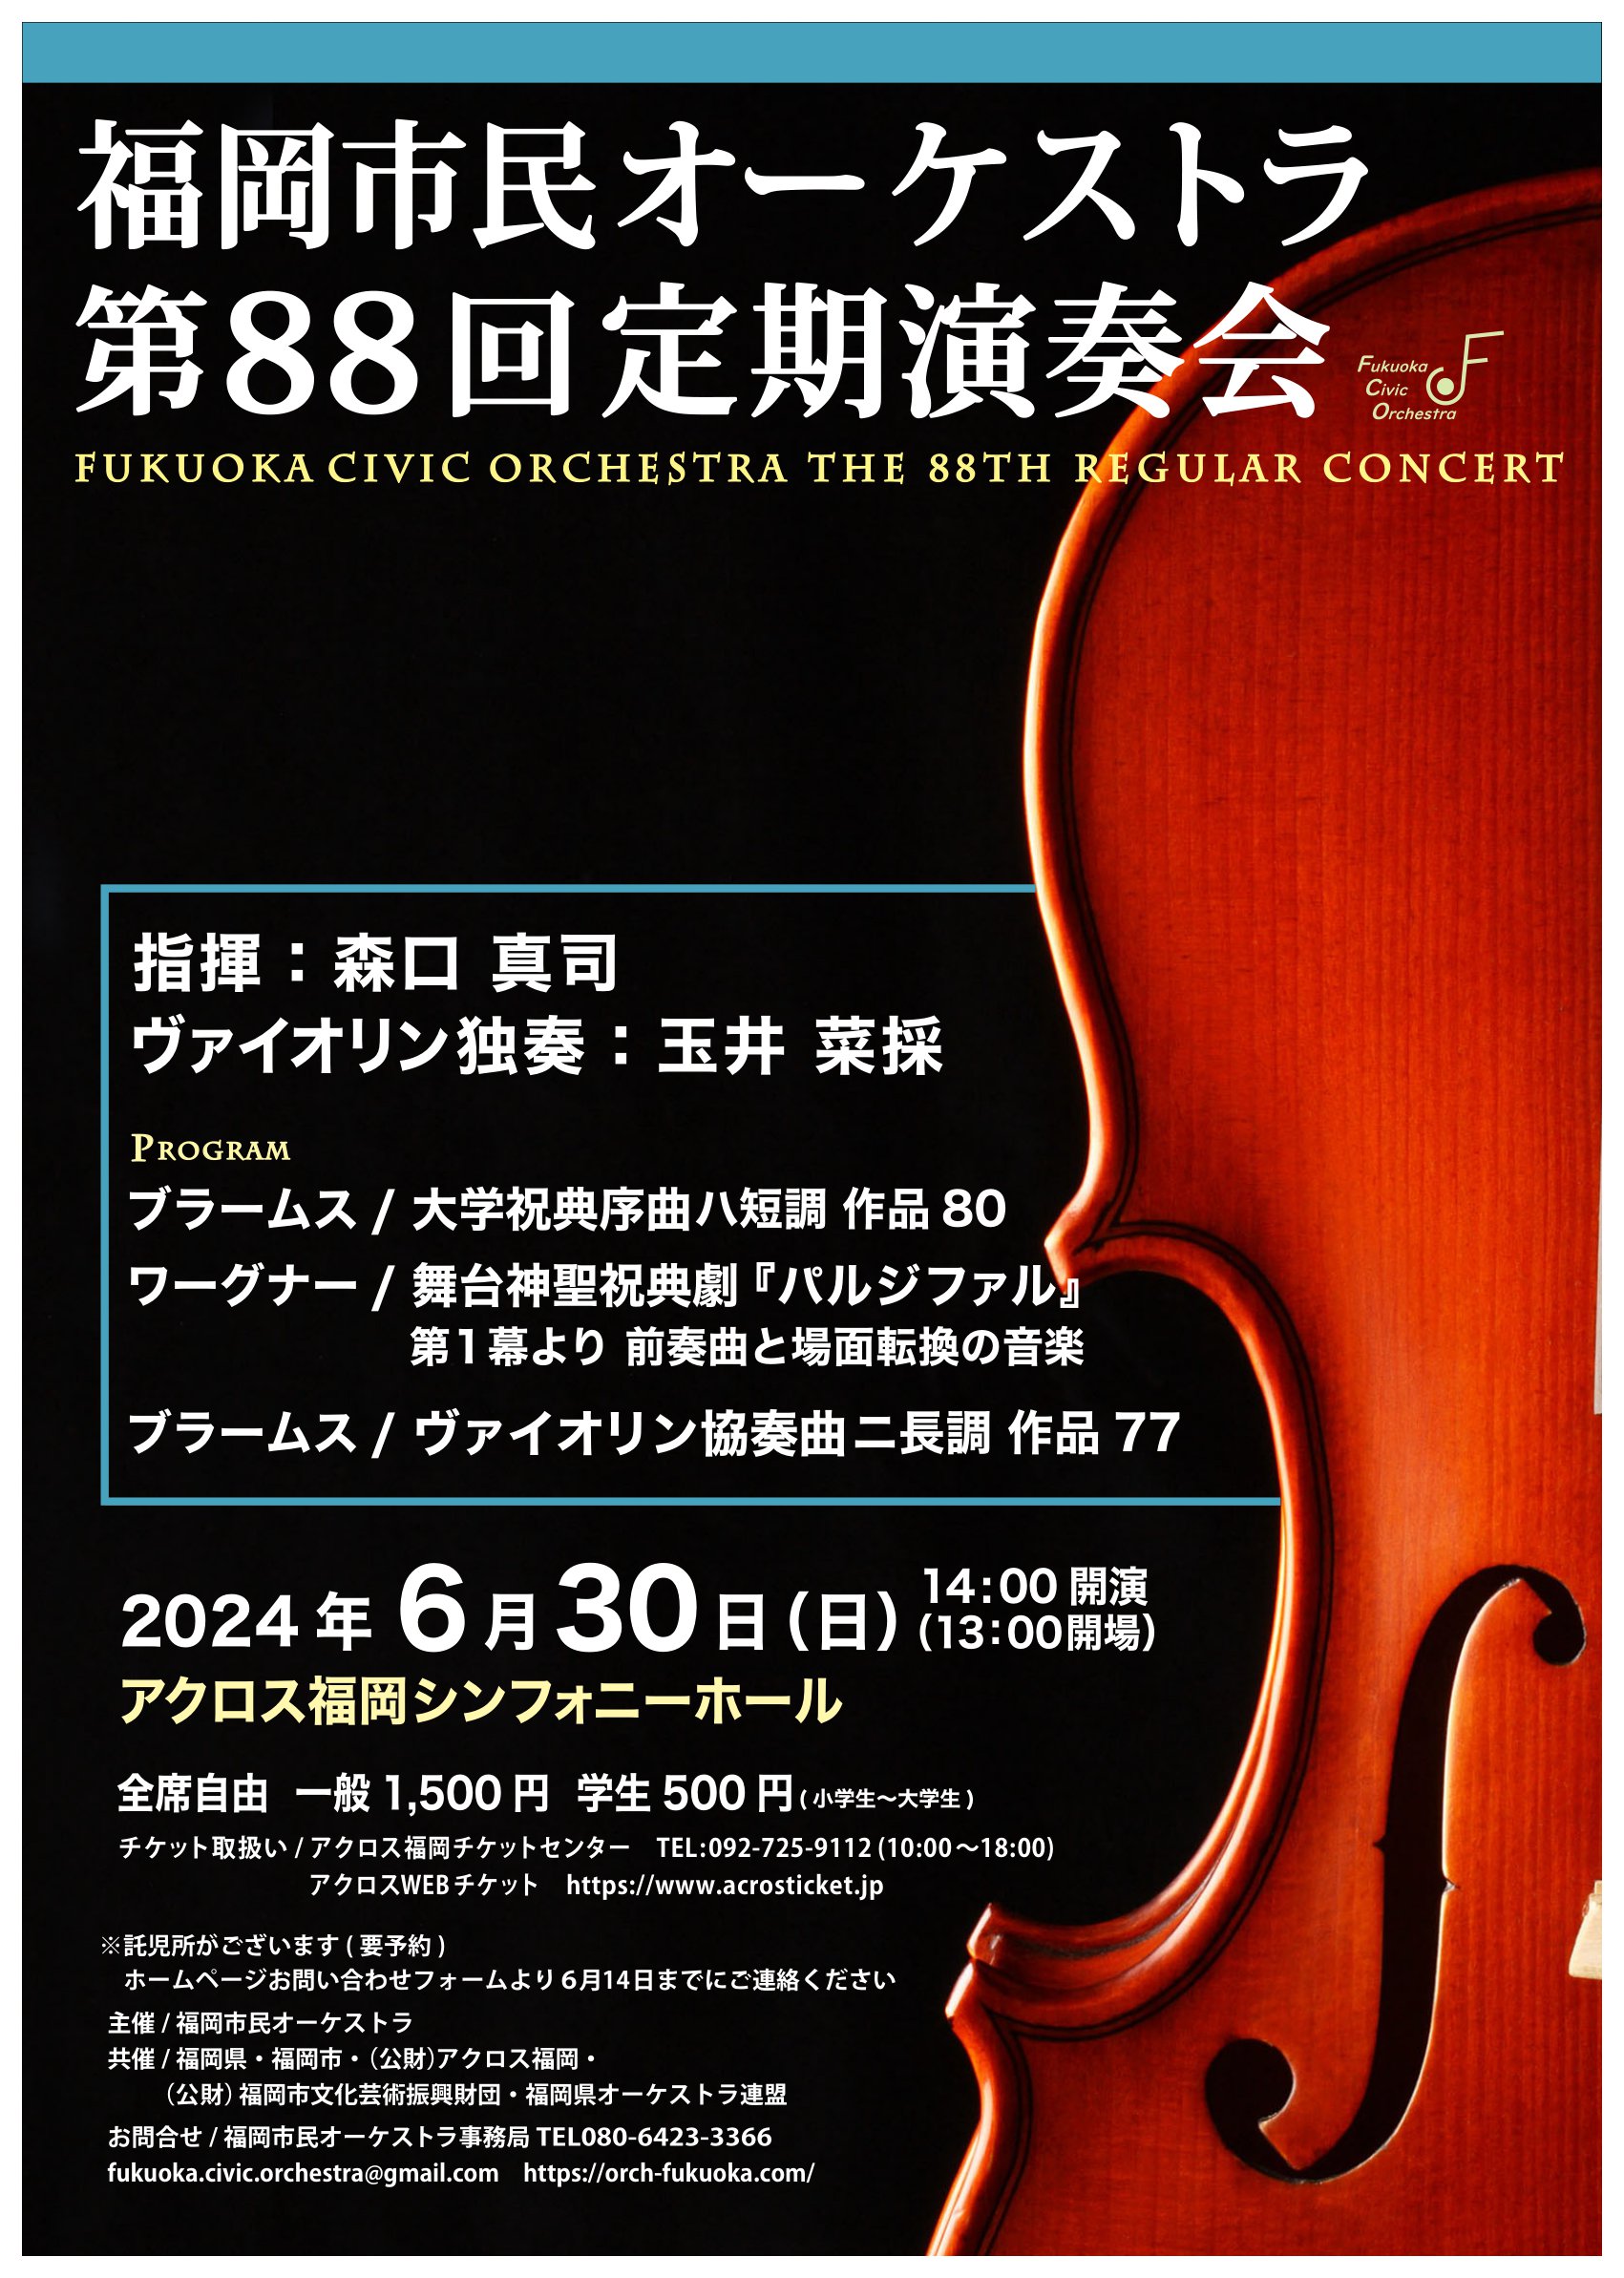 福岡市民オーケストラ福岡市民オーケストラ第88回定期演奏会のフライヤー画像